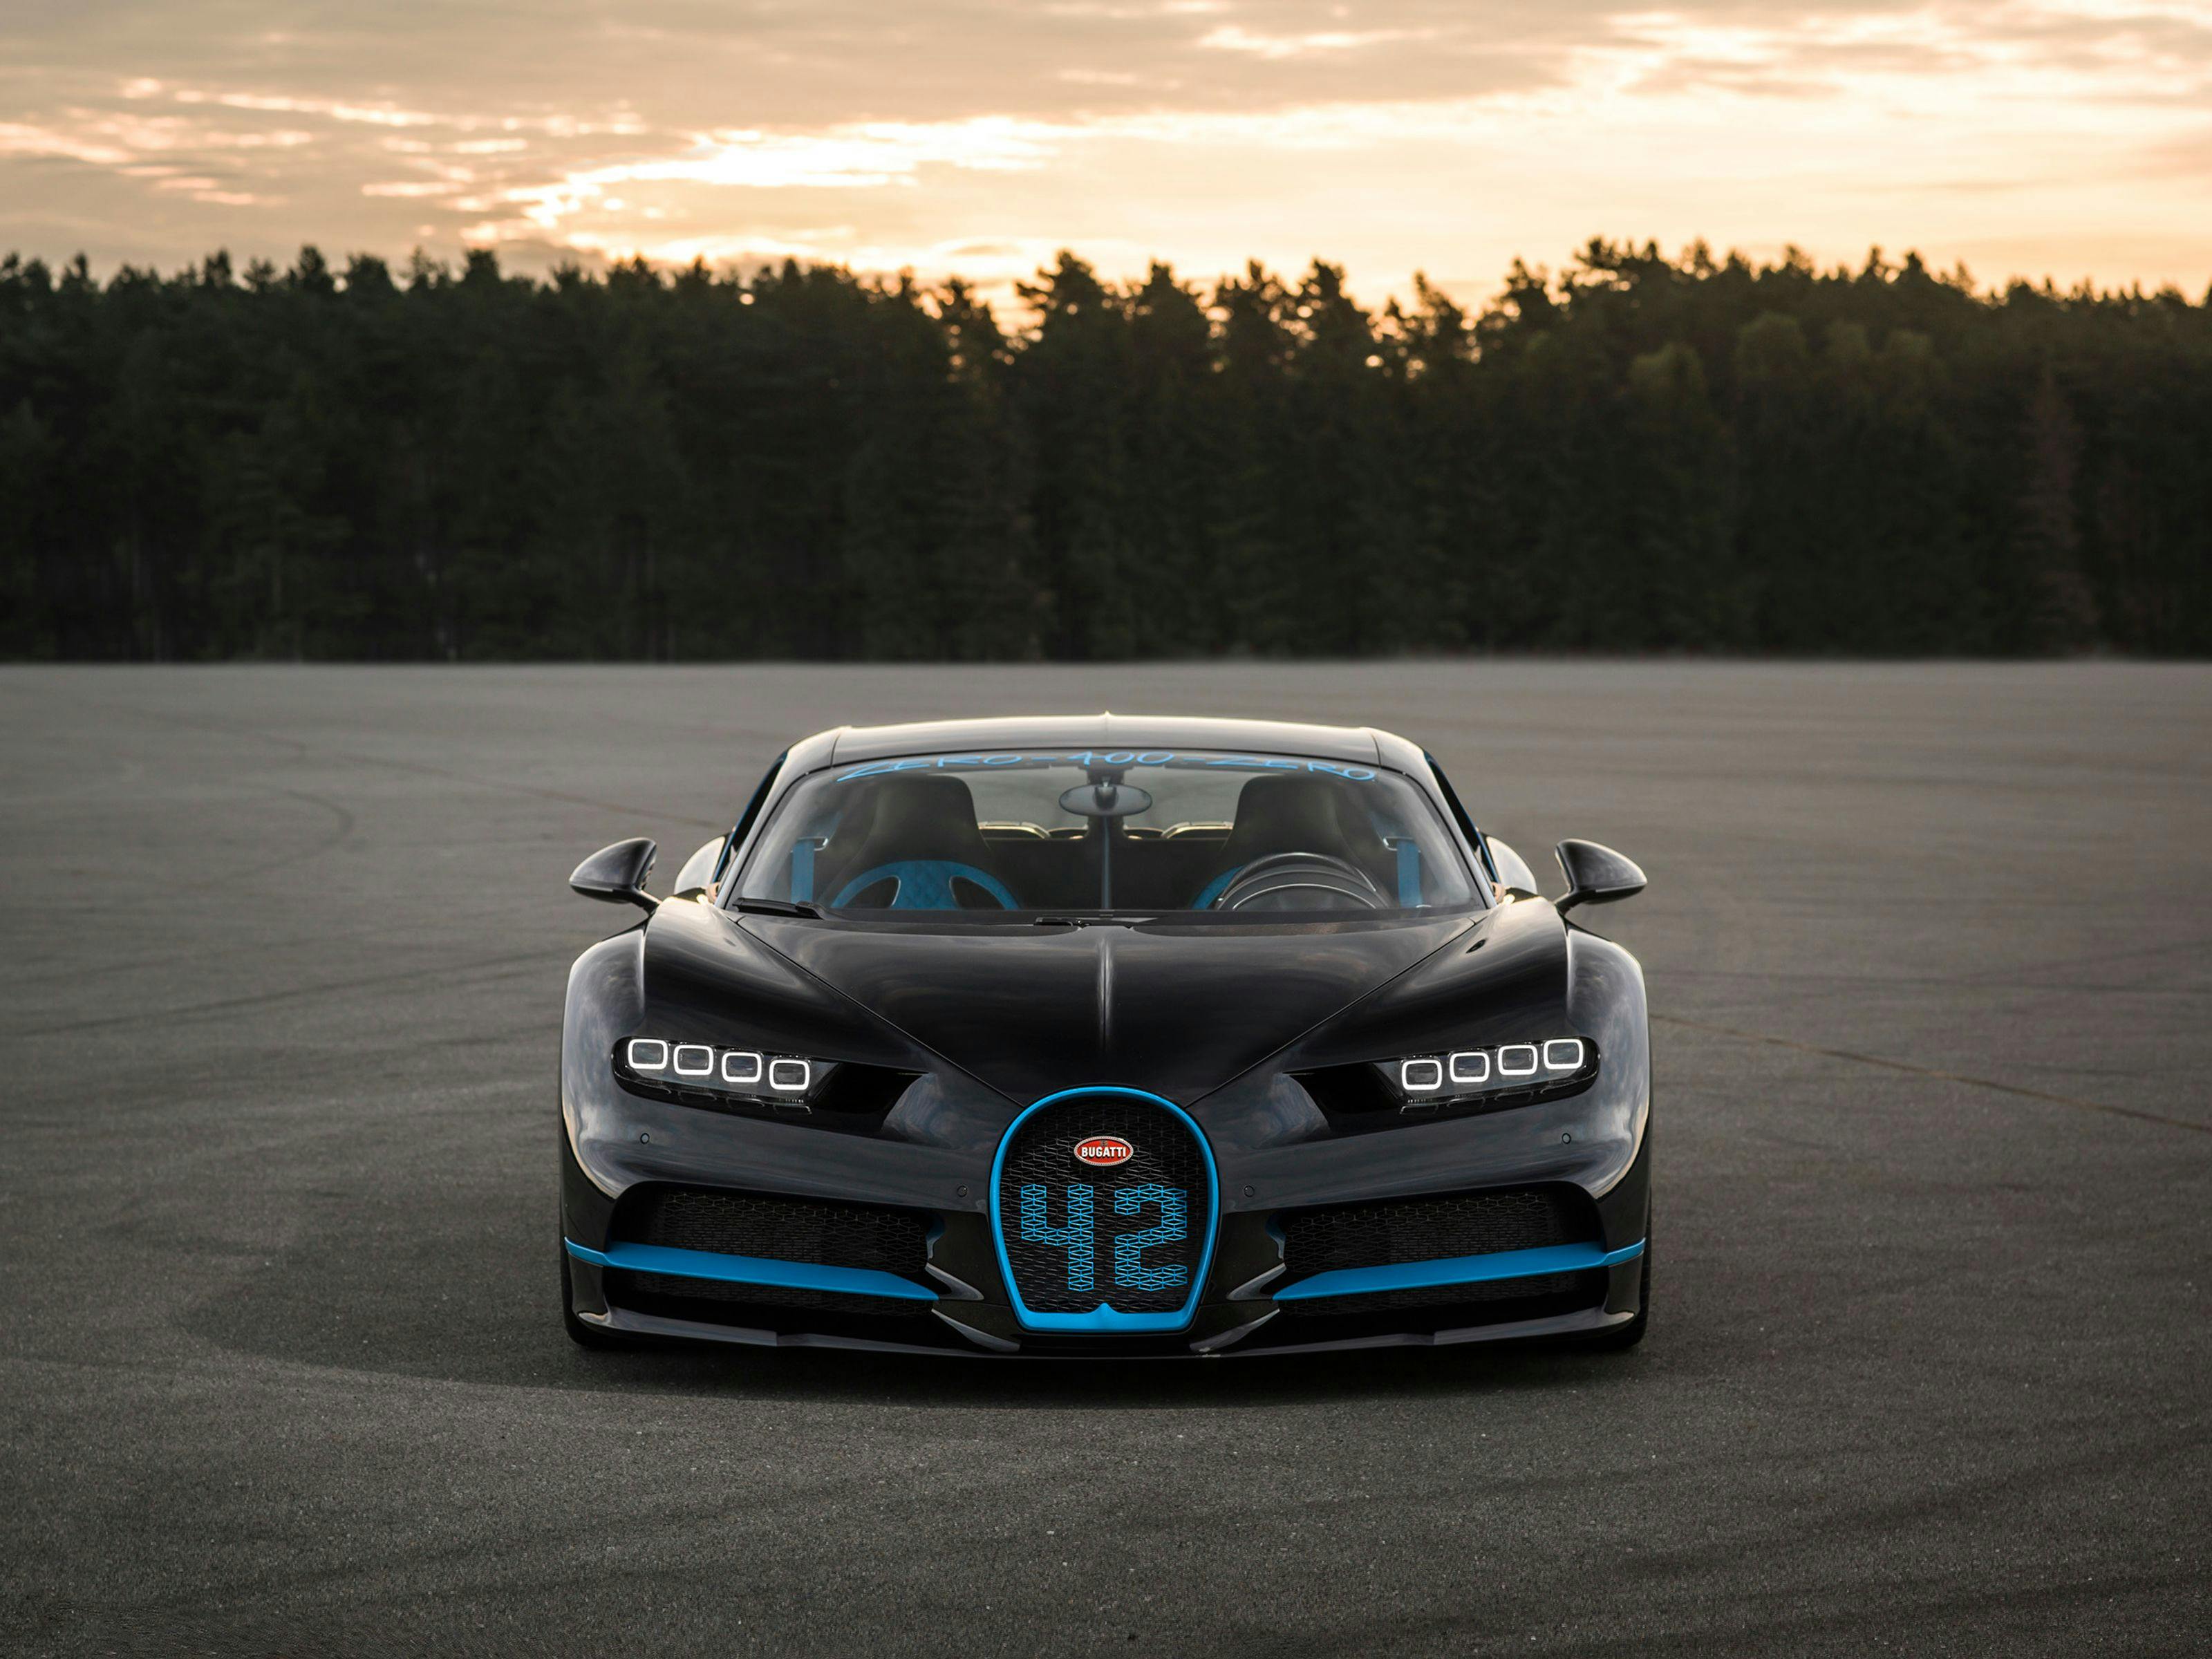 0-400-0 km/h en 42 secondes : Nouveau record du monde établi par la Bugatti Chiron